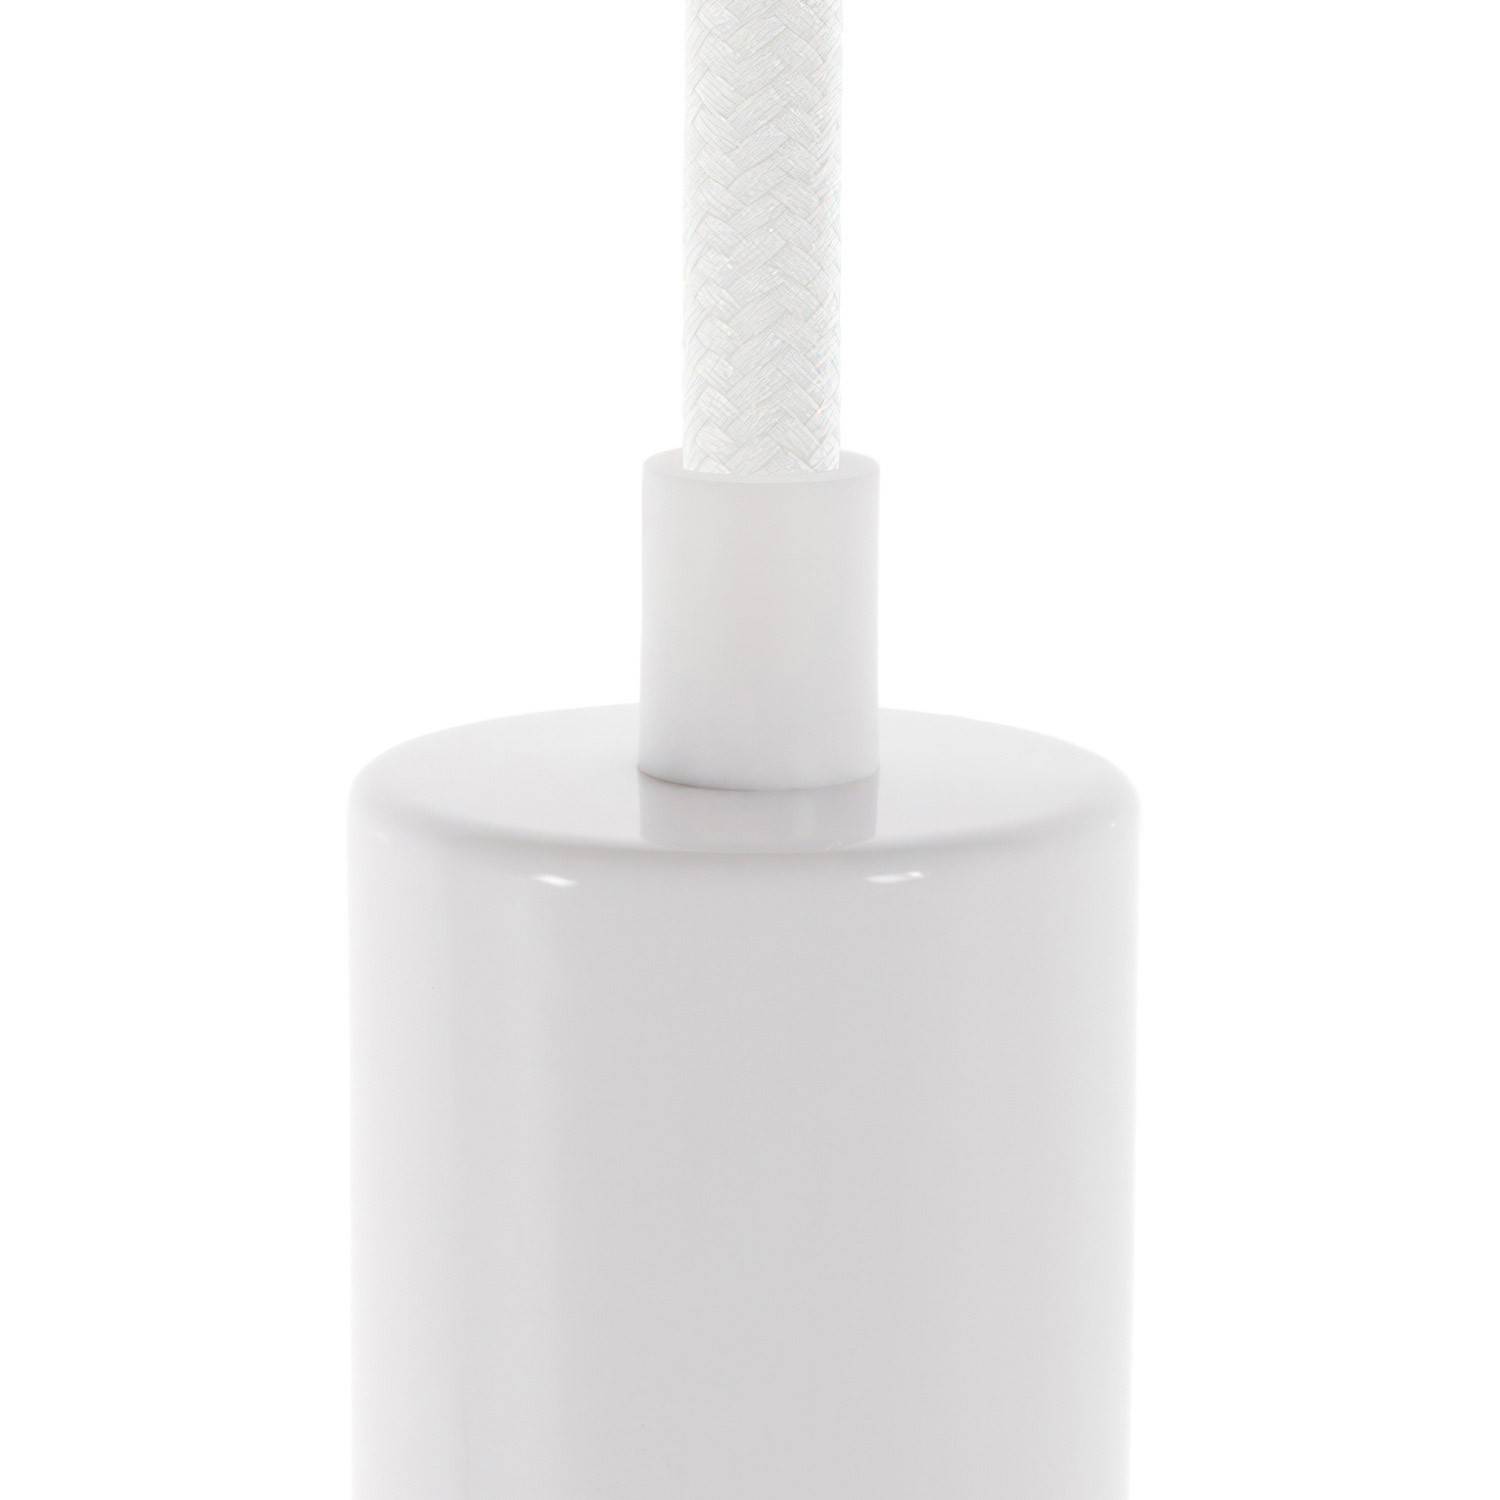 Cylindryczny plastikowy zacisk kablowy w komplecie z prętem, nakrętką i podkładką